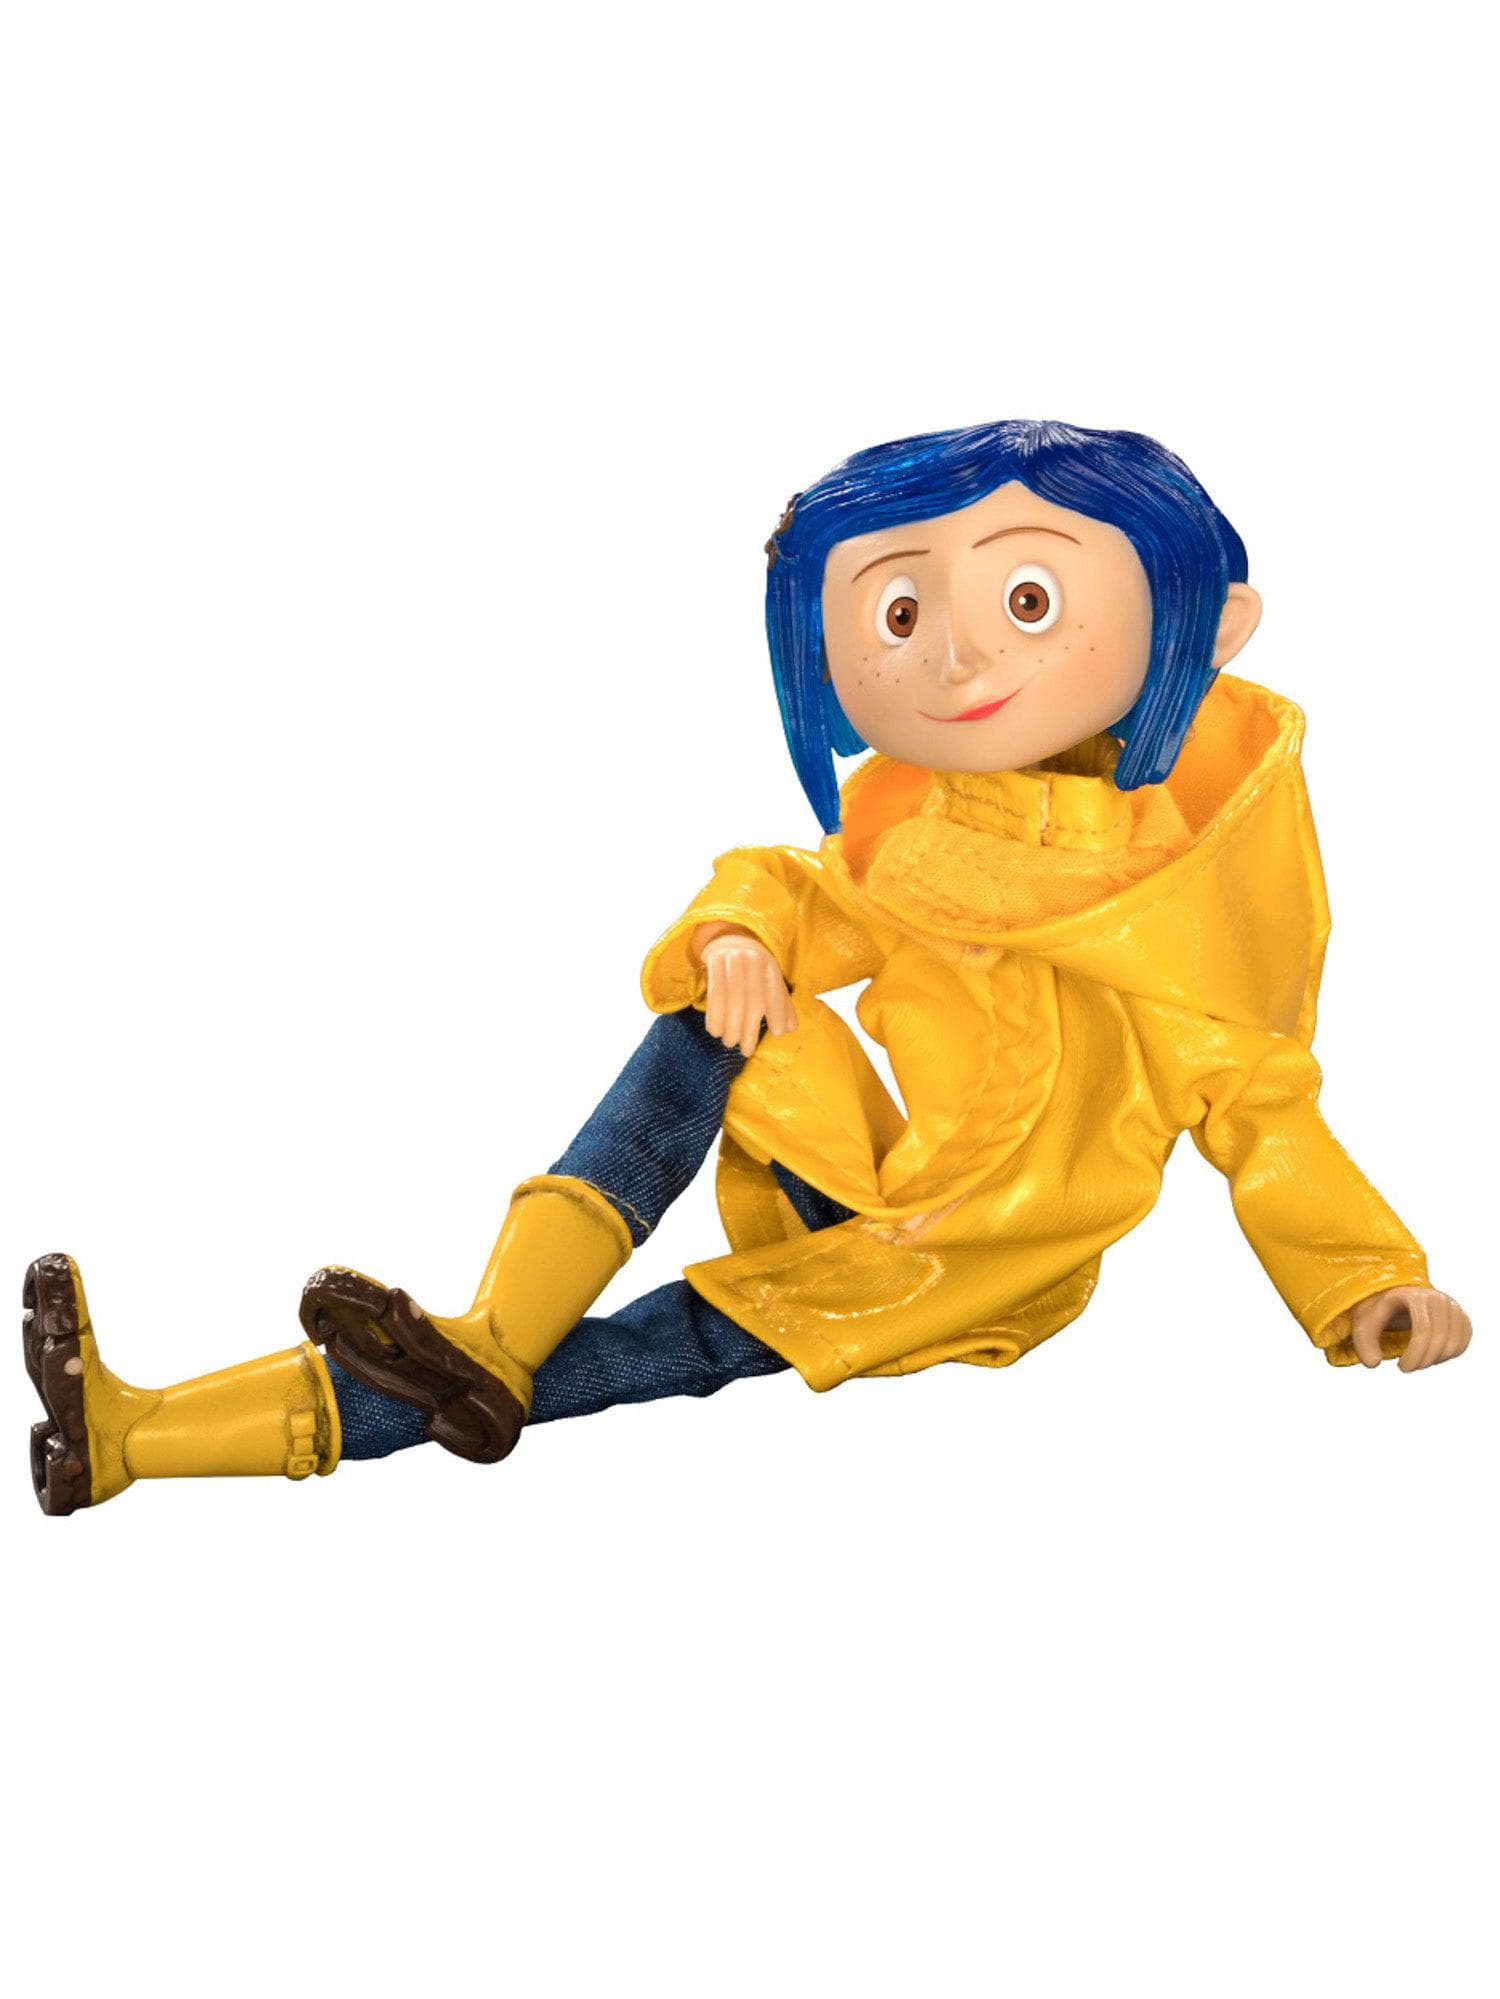 NECA - Coraline - Articulated Figure - Raincoat Coraline - costumes.com